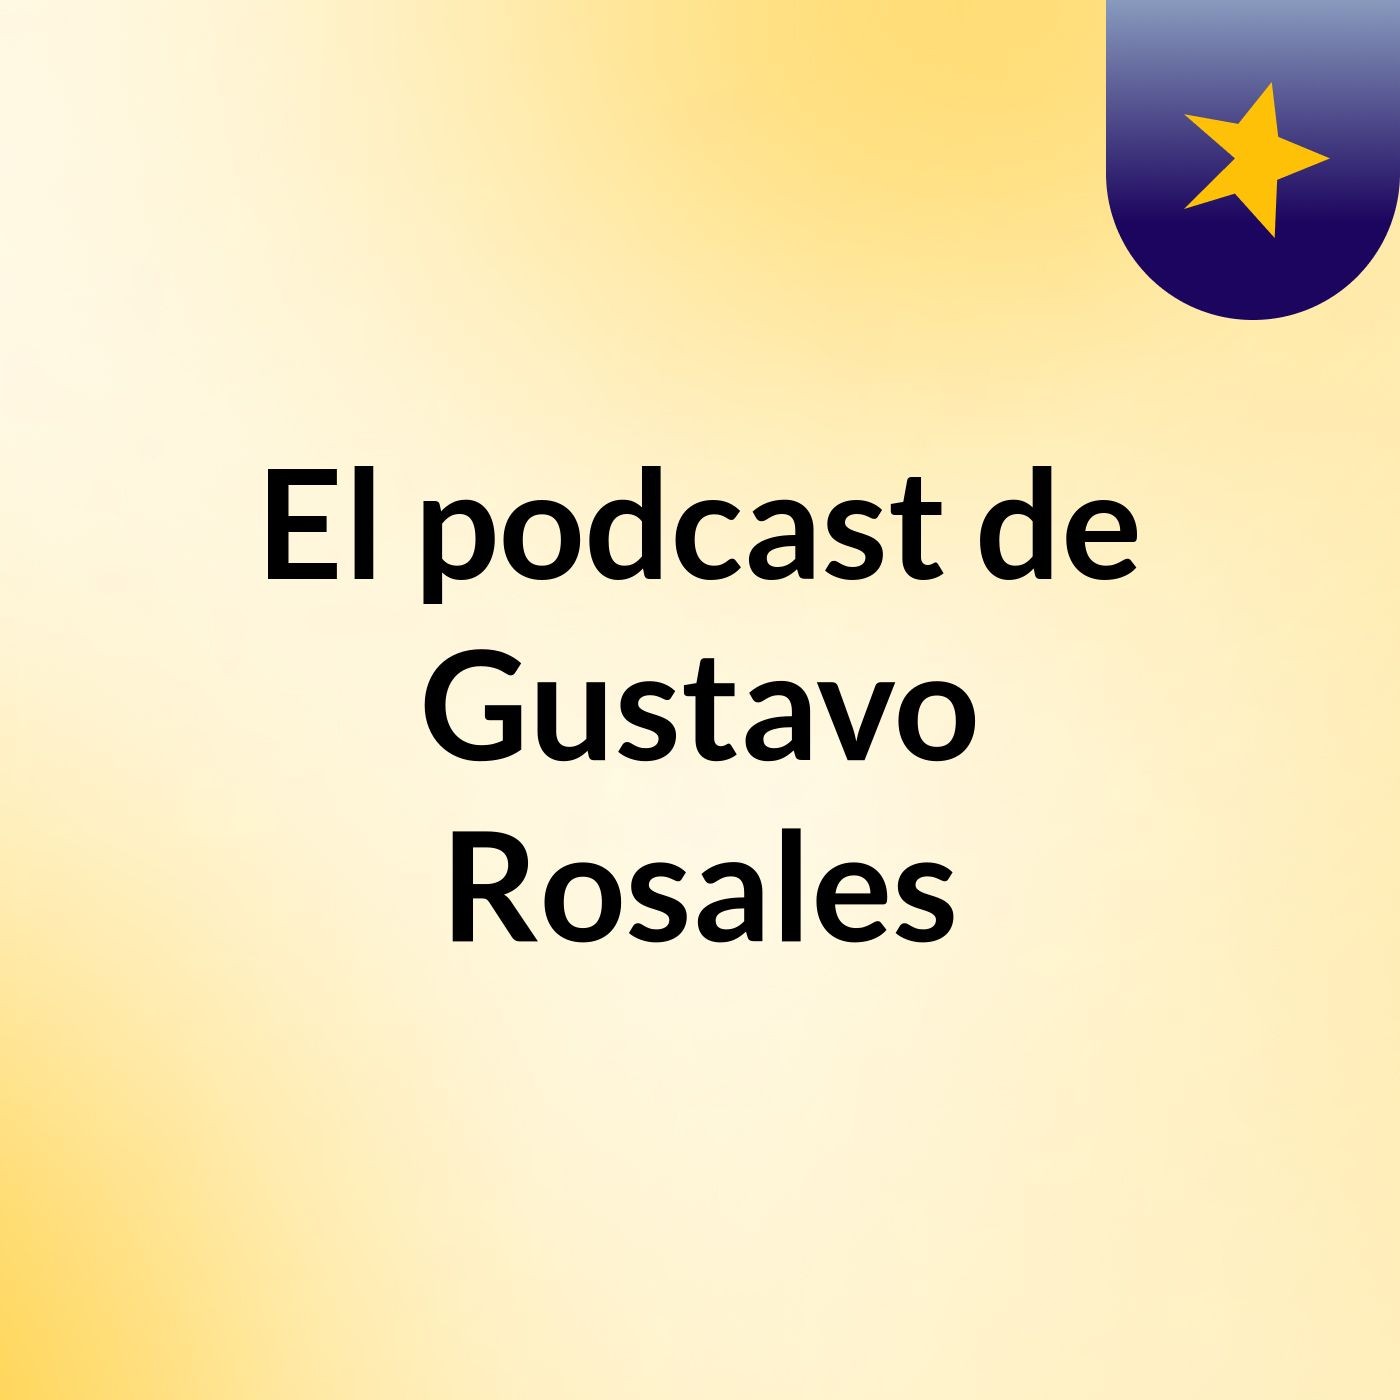 Episodio 5 - El podcast de Gustavo Rosales